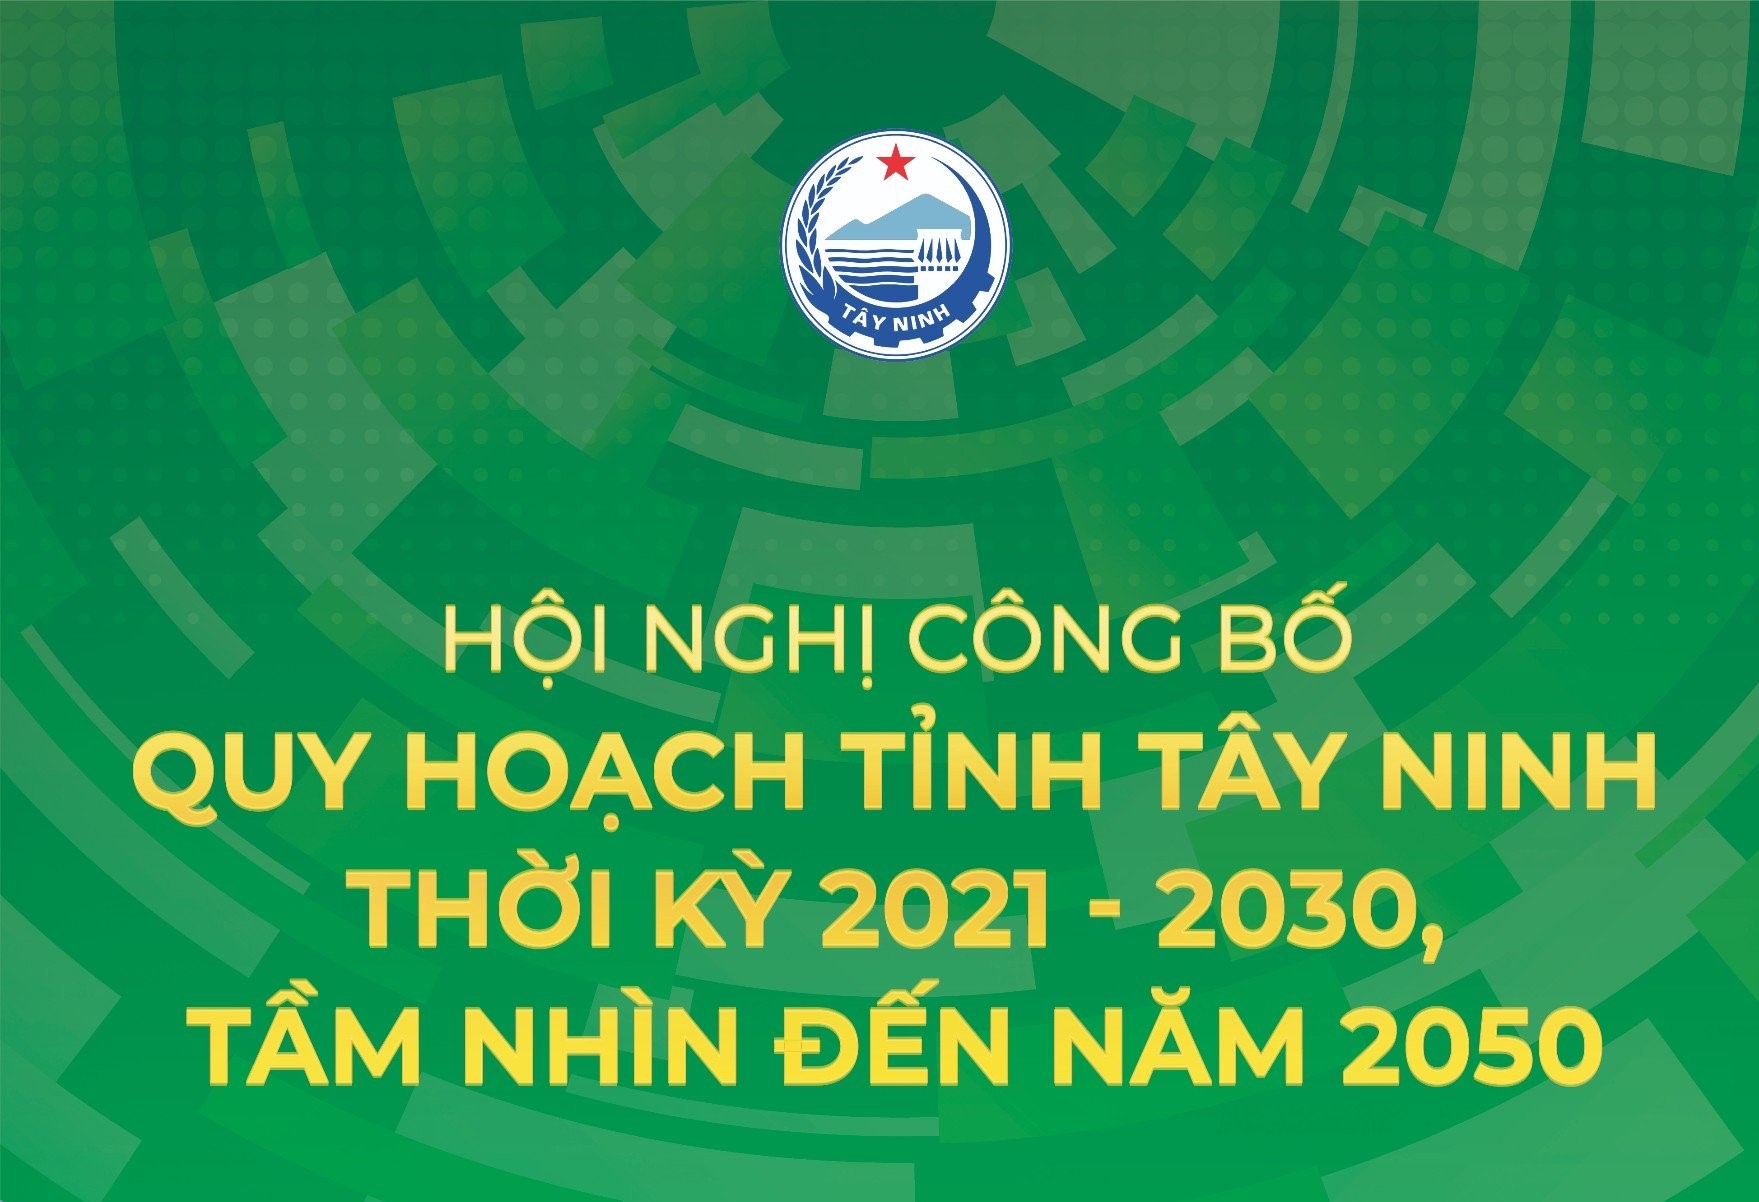 Sắp diễn ra Hội nghị công bố Quy hoạch tỉnh Tây Ninh thời kỳ 2021-2030, tầm nhìn đến năm 2050